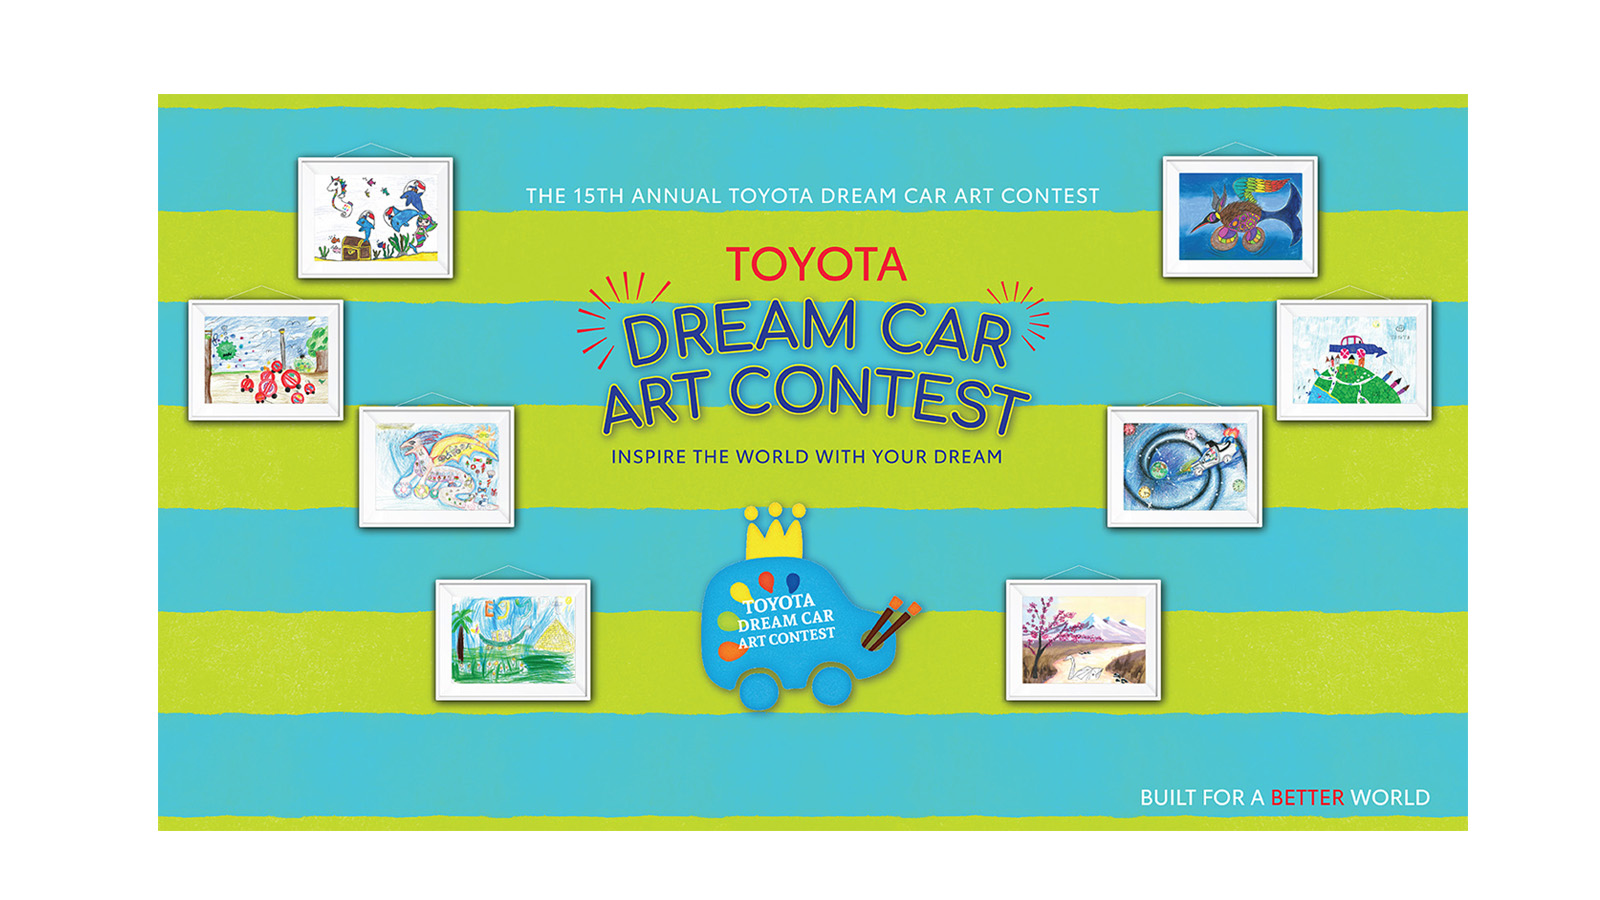 THE TOYOTA DREAM CAR ART CONTEST